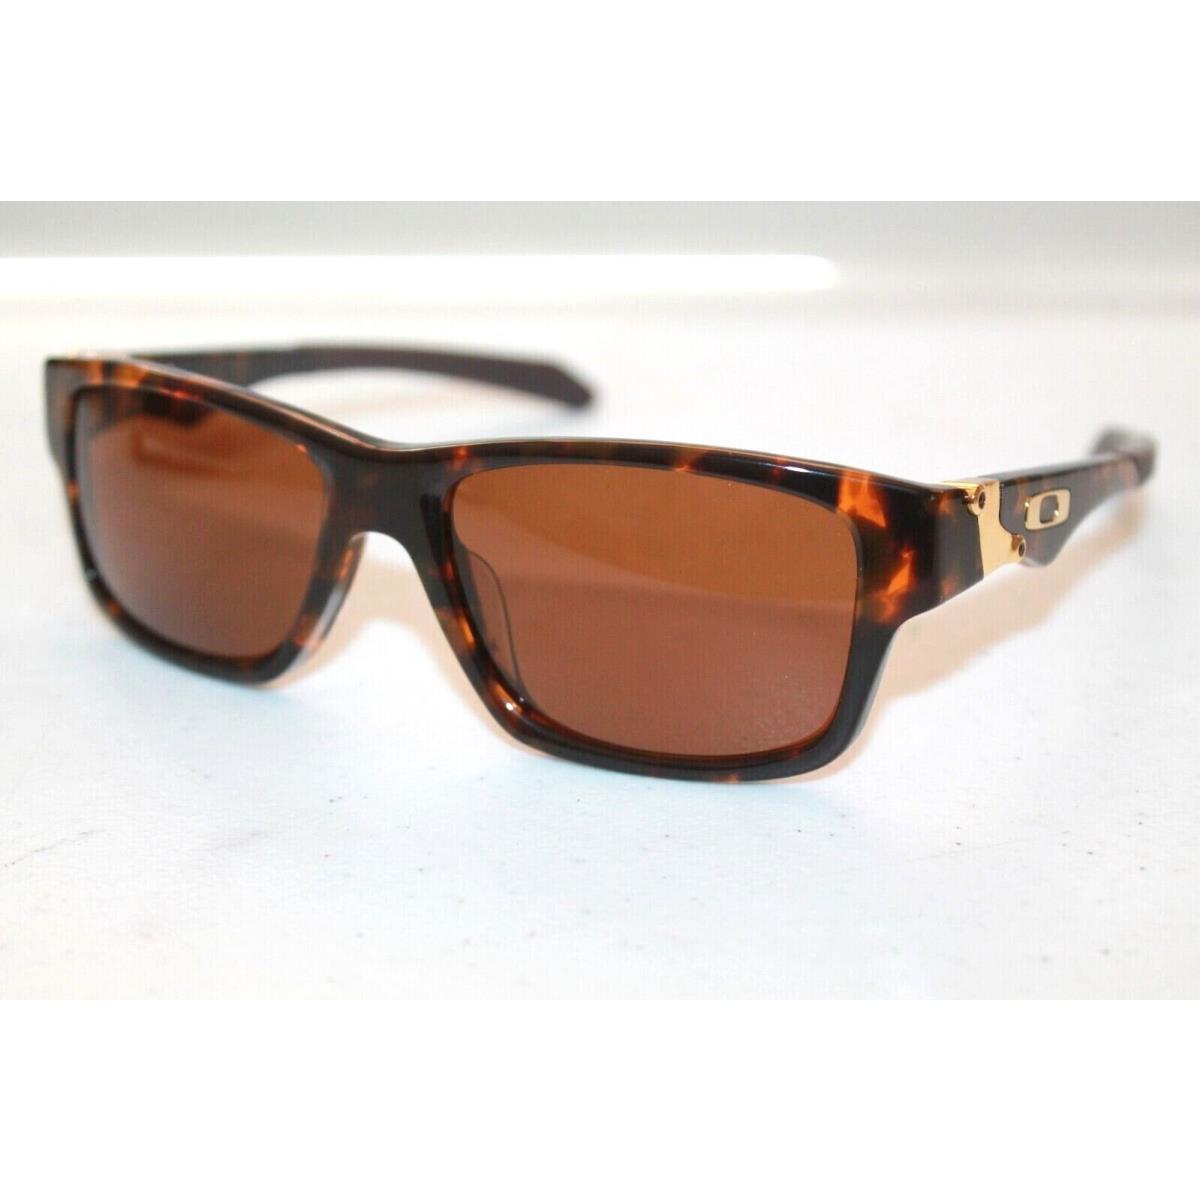 Oakley Jupiter Squared LX AF Sunglasses OO2040-03 Tortoise W/ Dark Bronze Lens